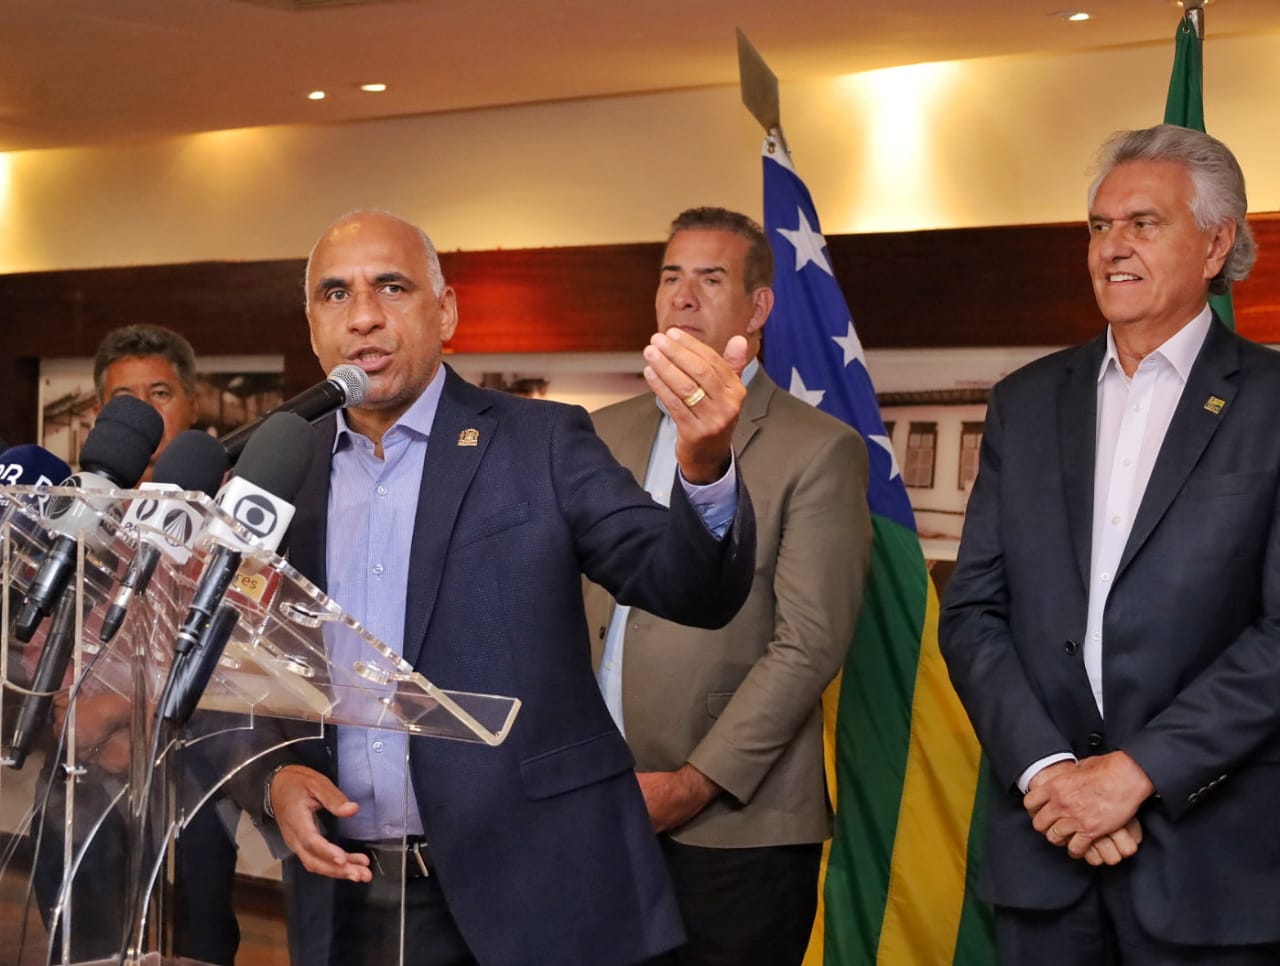 Prefeito Rogério Cruz, ao lado do governador Ronaldo Caiado, lança, durante entrevista, bilhete único do transporte coletivo, que entra em vigor neste sábado (02/04)